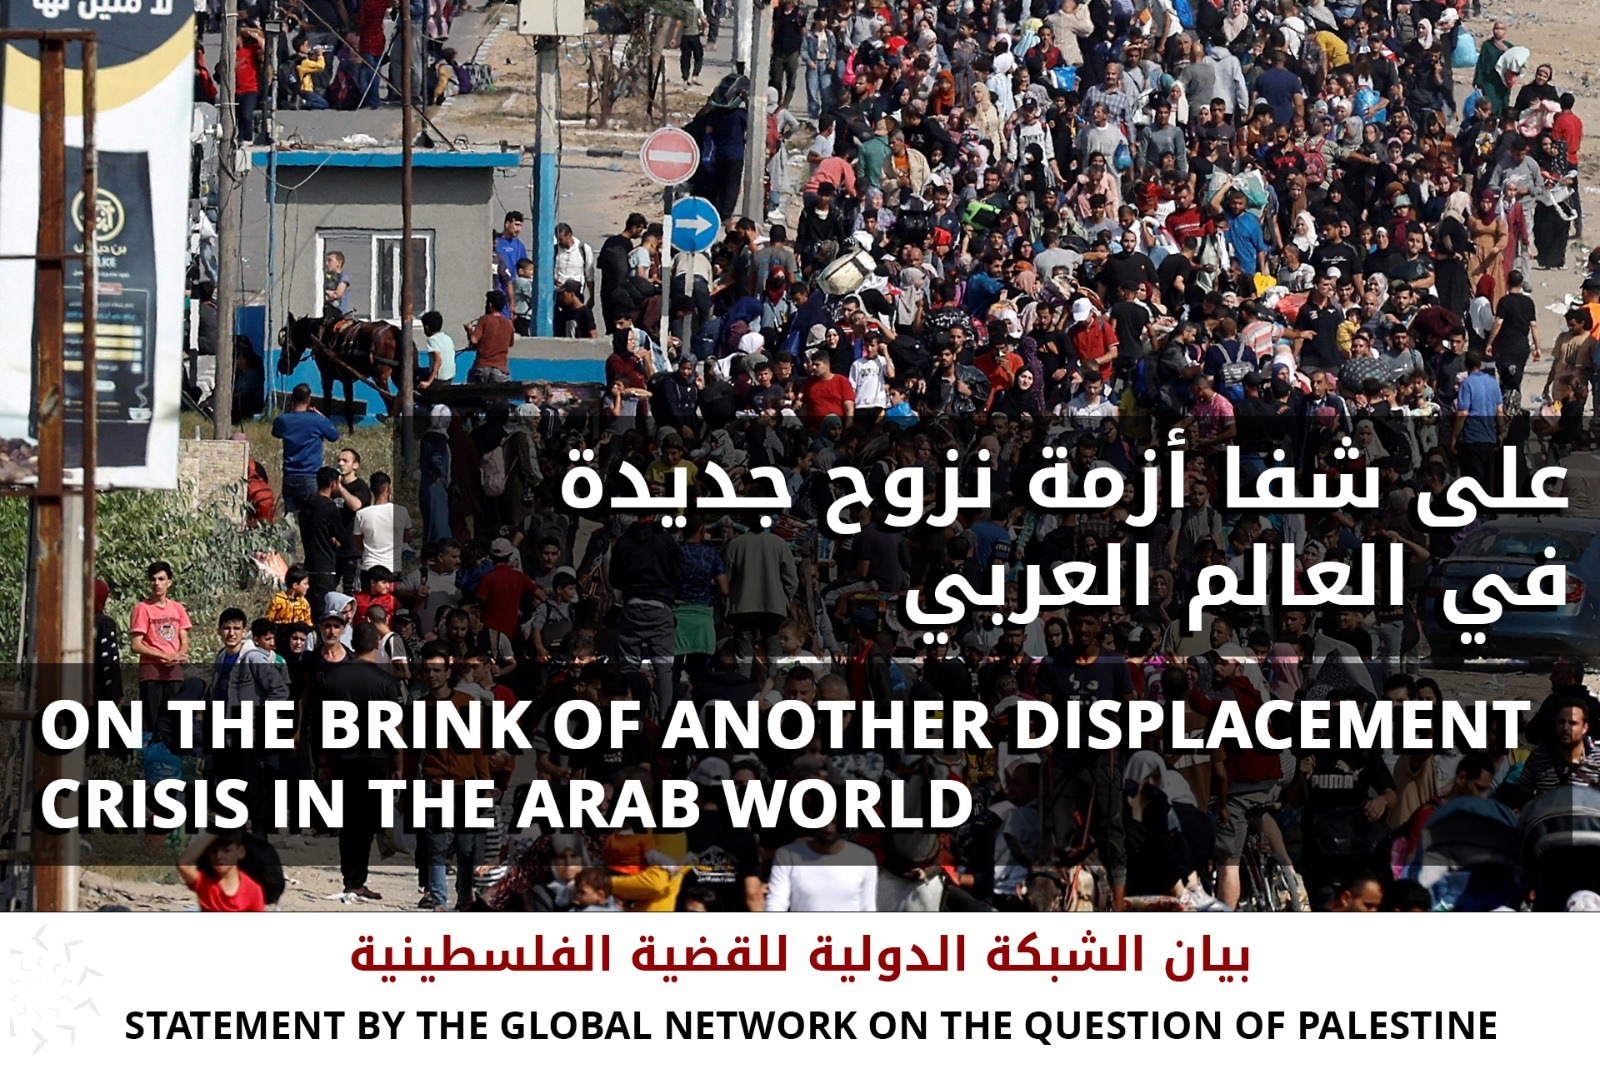 بيان الشبكة الدولية للقضية الفلسطينية..على شفا أزمة نزوح جديدة في العالم العربي